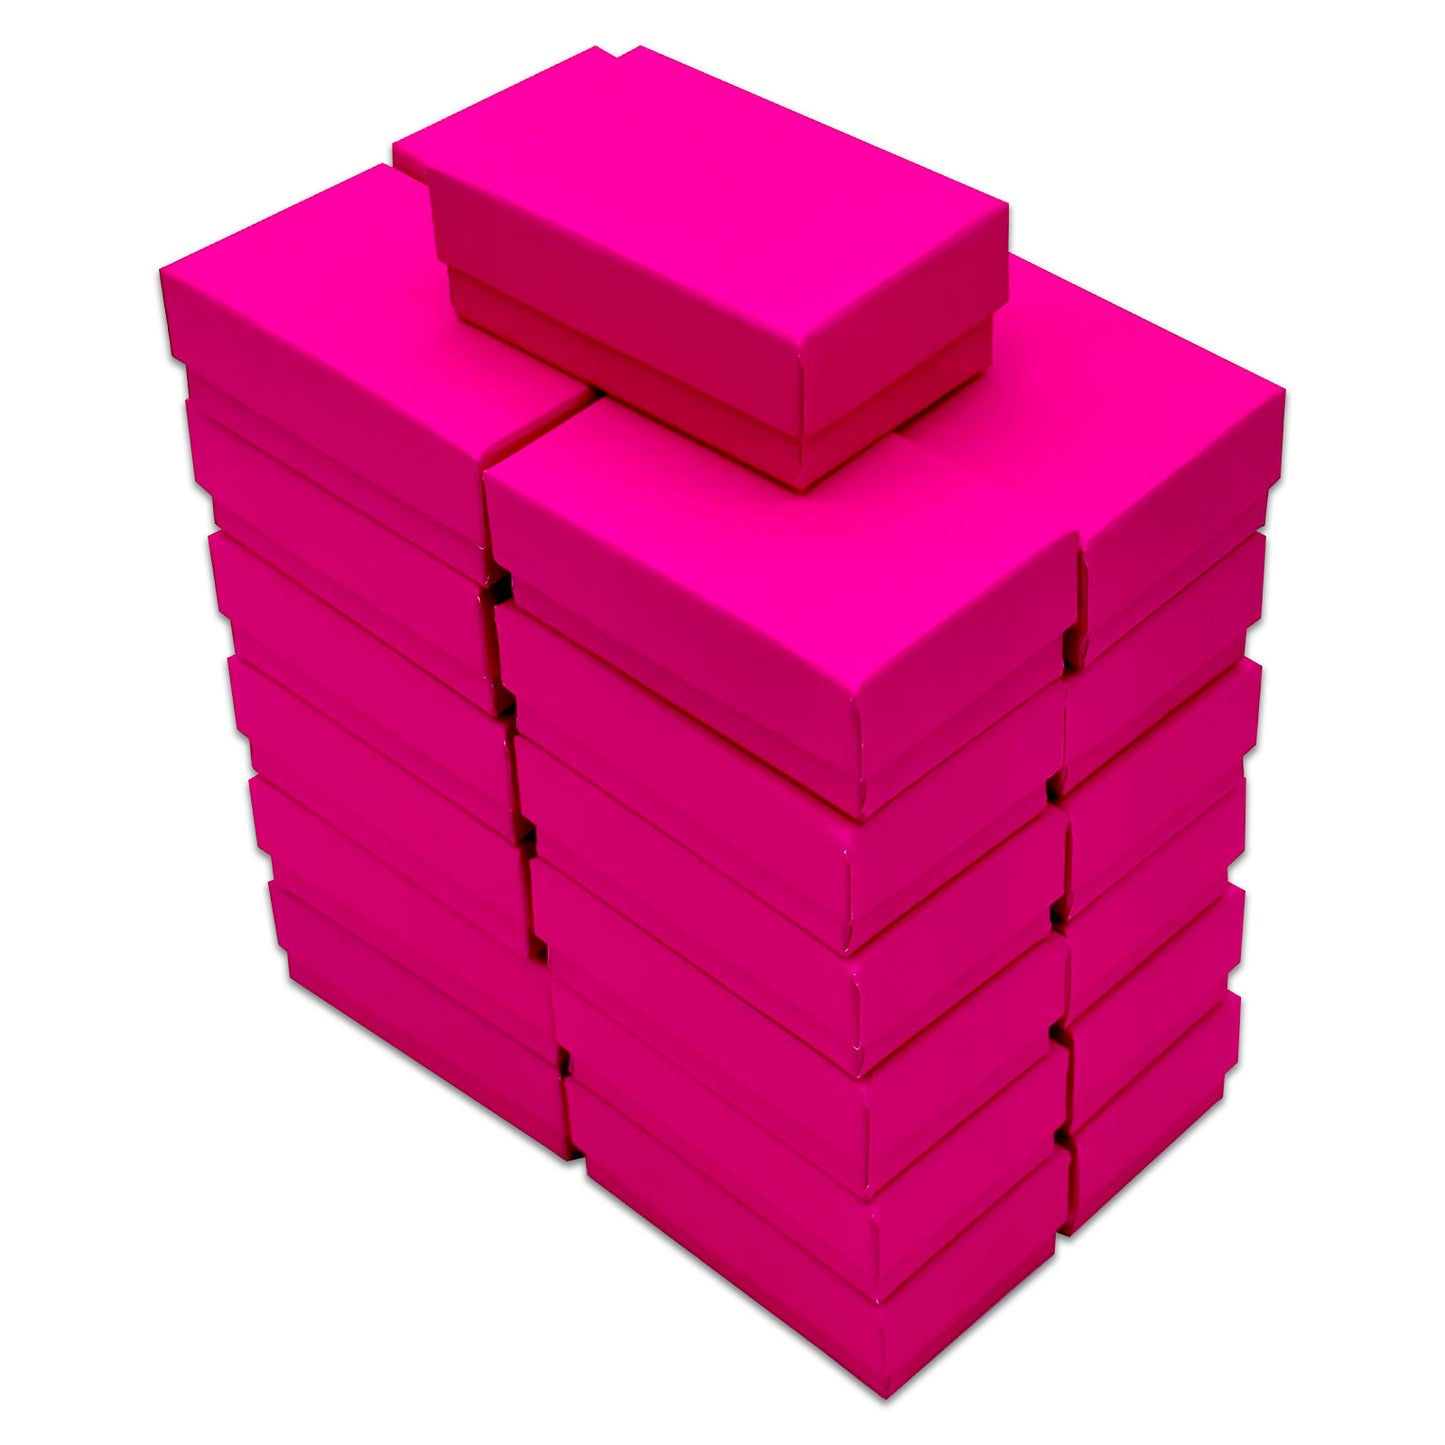 2 5/8" x 1 5/8" x 1" Neon Fuchsia Cotton Filled Paper Box